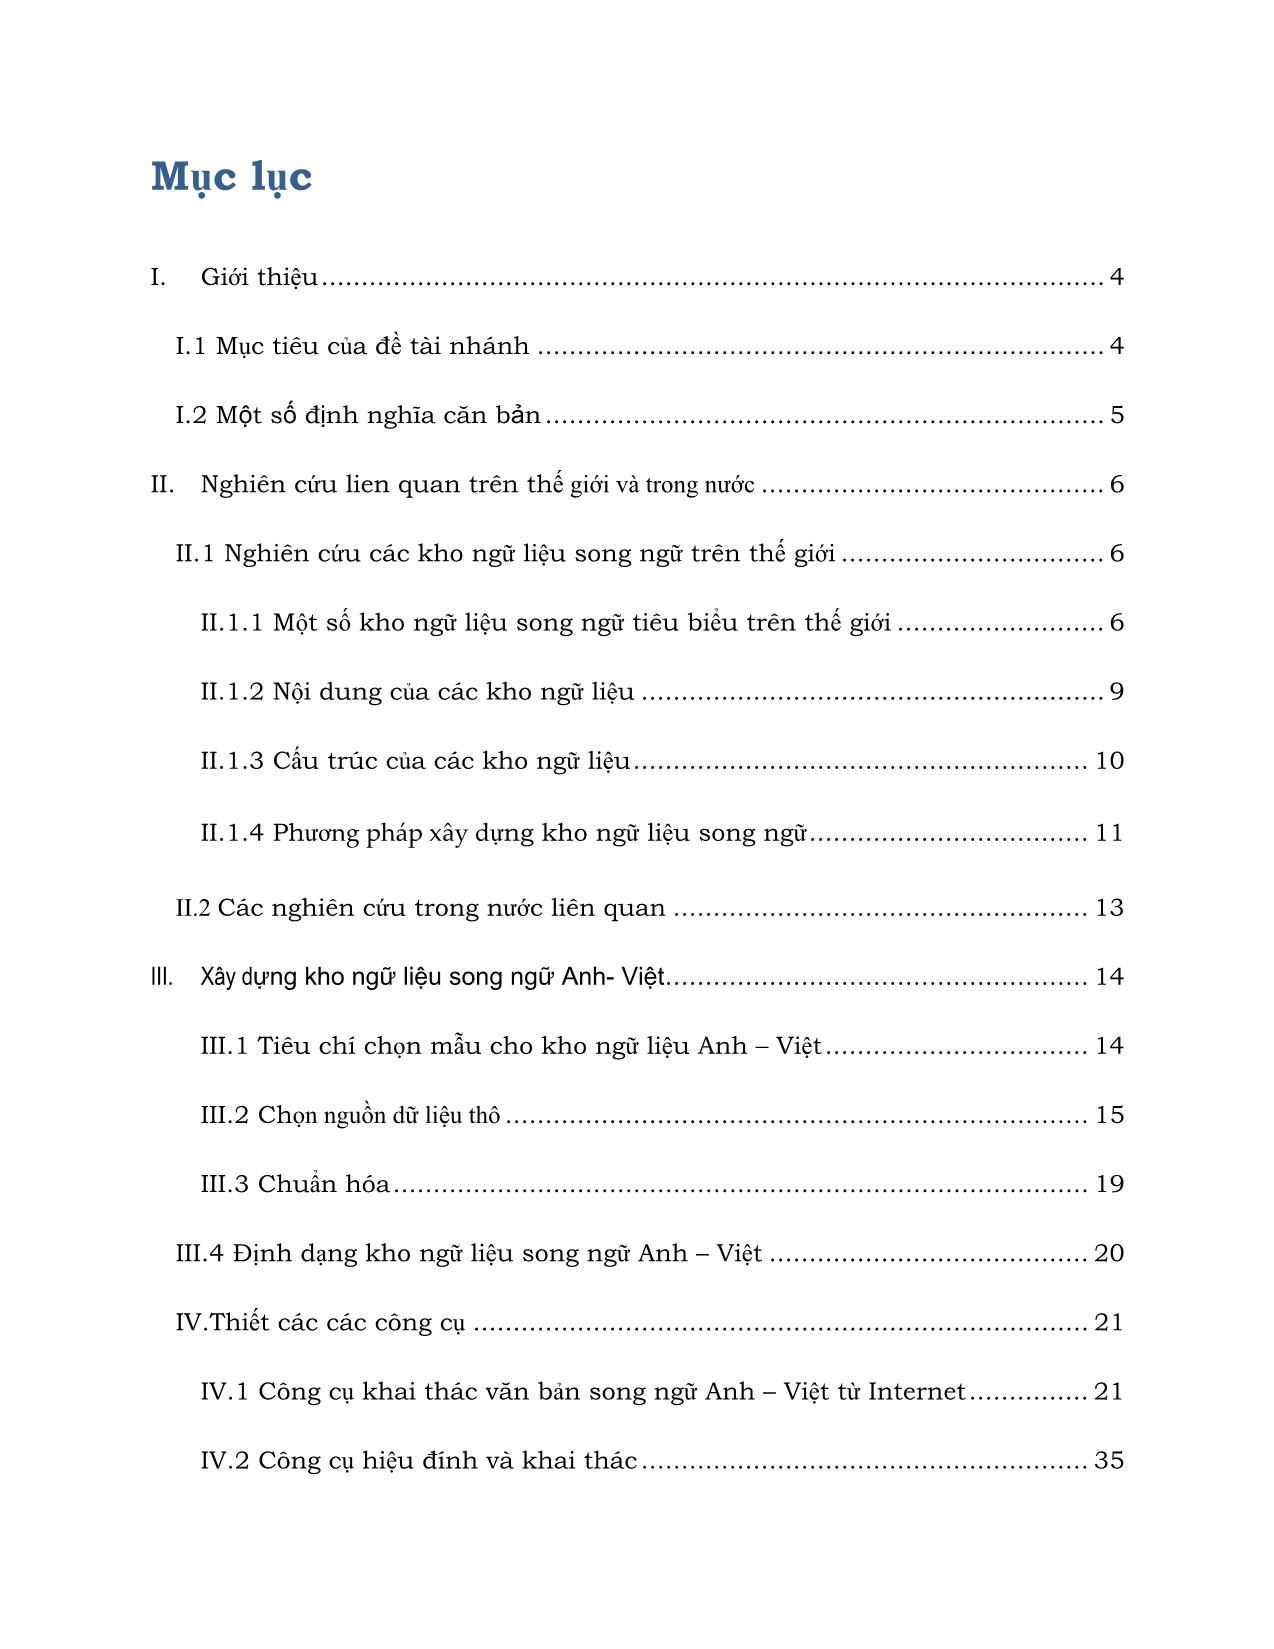 Báo cáo kỹ thuật Xây dựng kho ngữ liệu song ngữ Anh - Việt trang 2